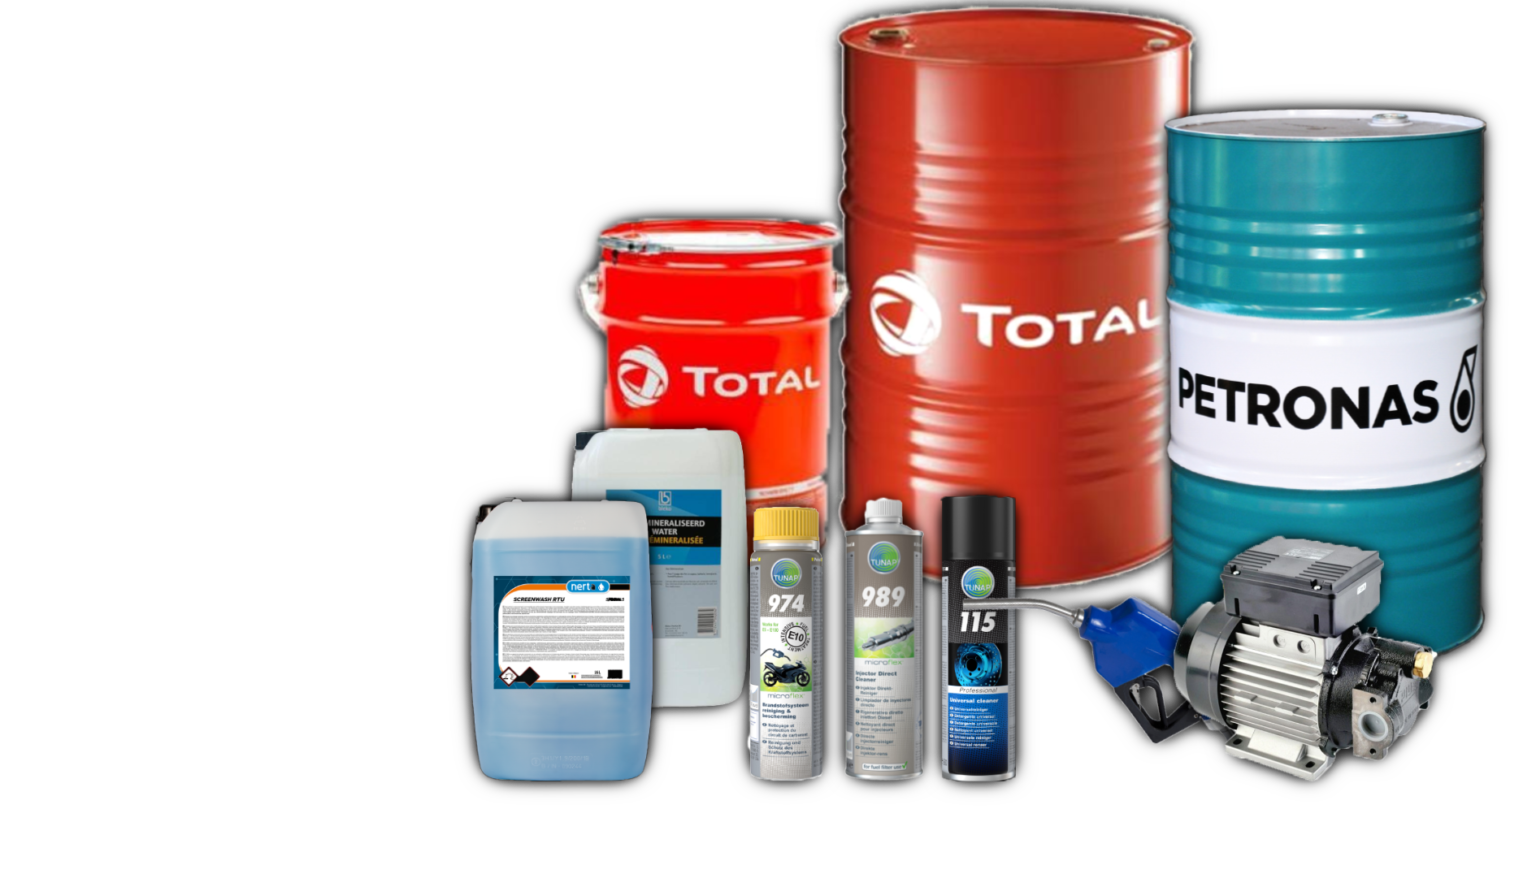 Productaanbod Petronas TwinOil Total Energies Vetten smeermiddelen olie installaties service